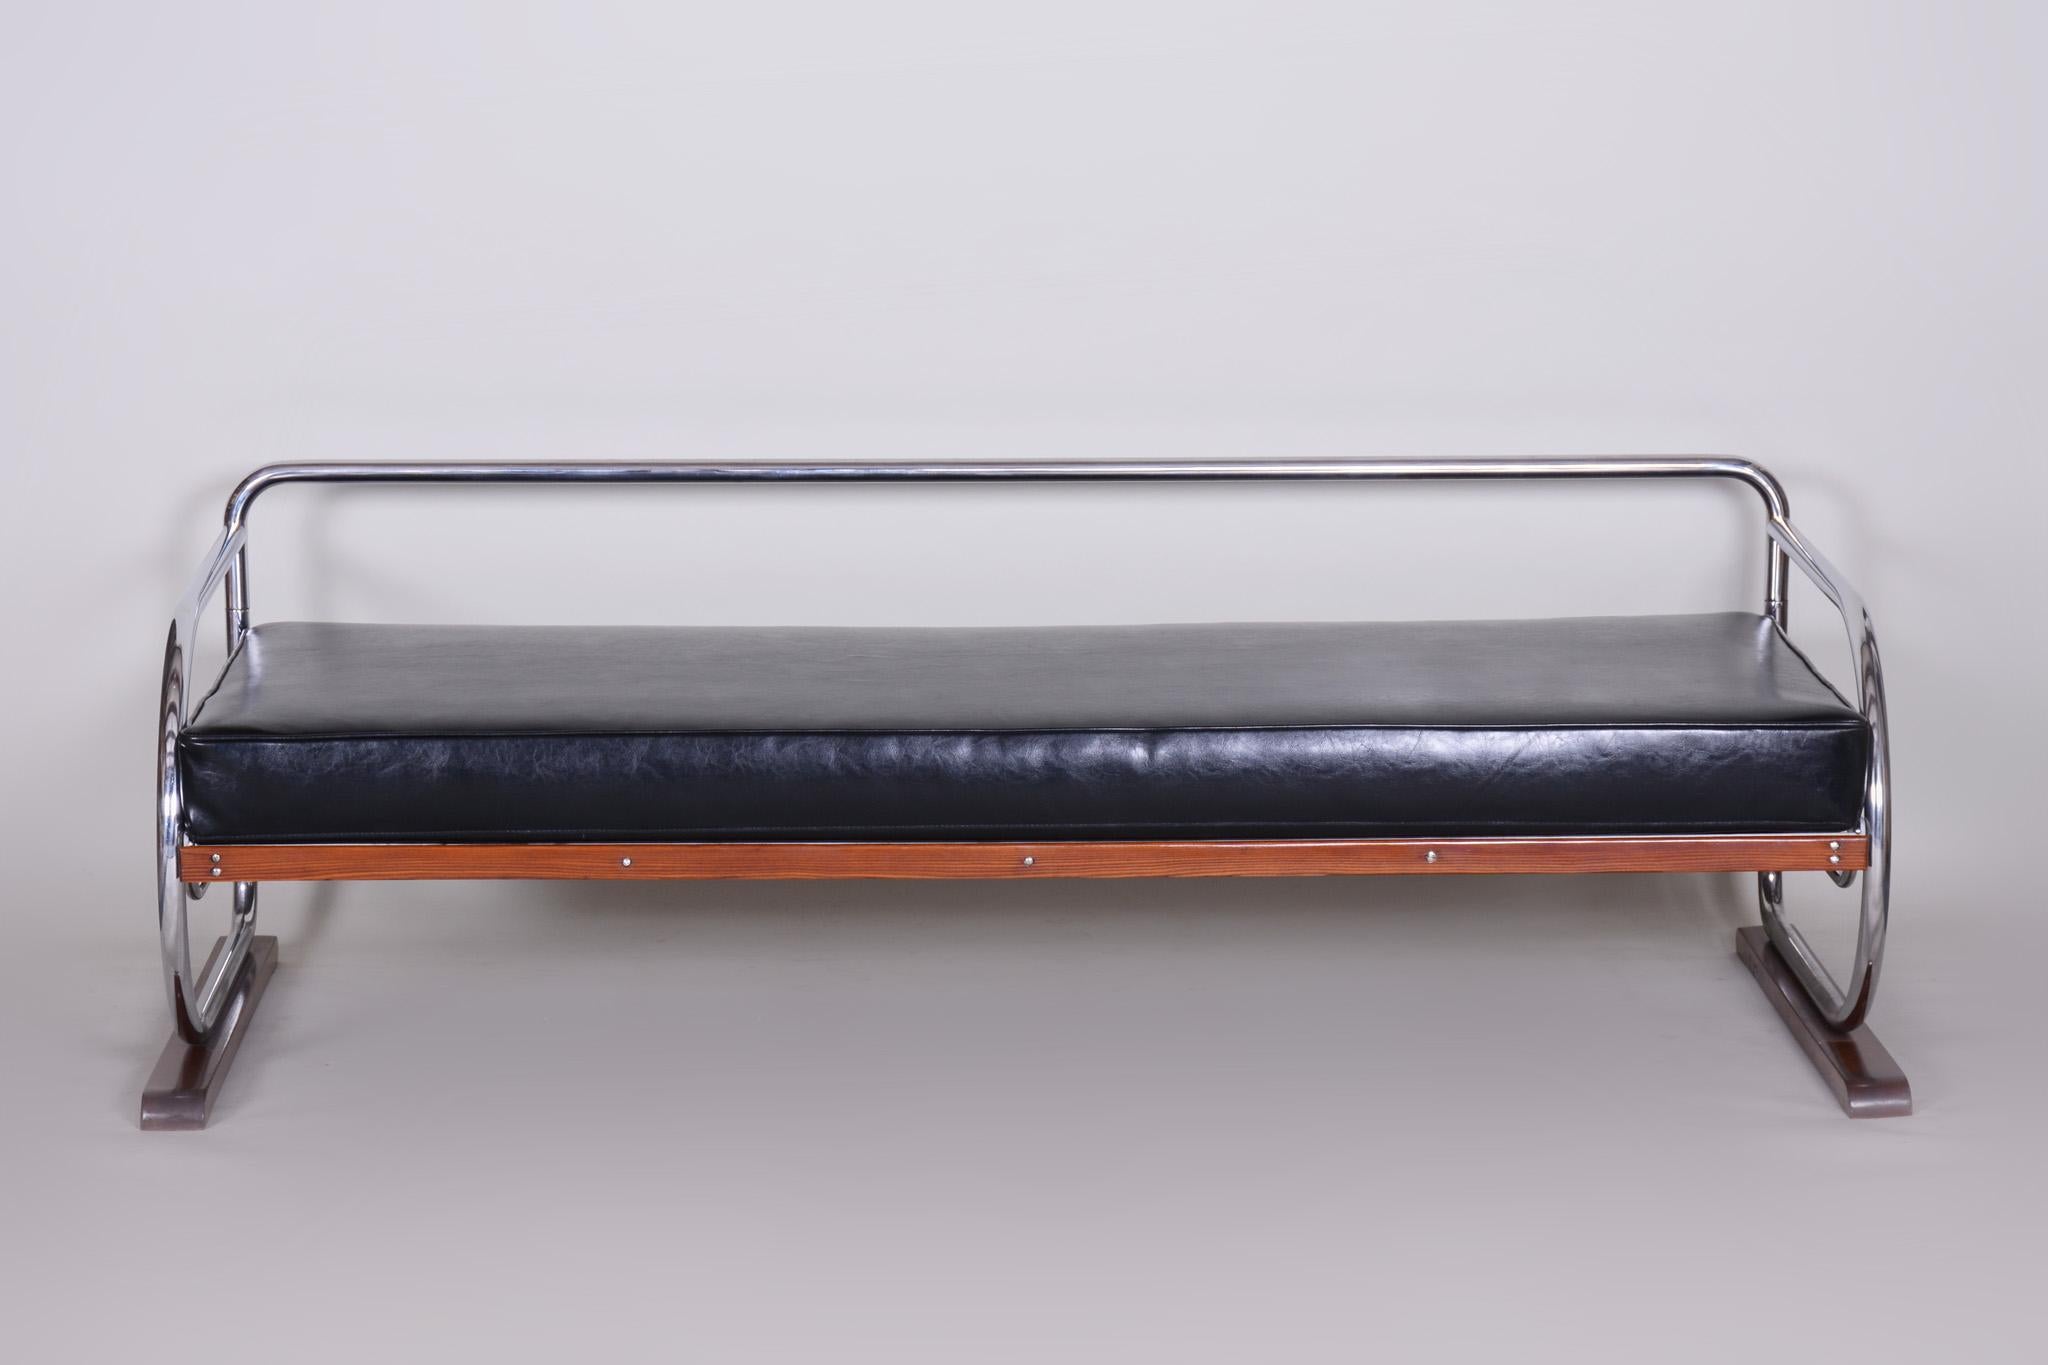 Sofa im Bauhaus-Stil mit einem Gestell aus lackiertem Holz und verchromtem Stahlrohr.
Hergestellt von Robert Slezák in den 1930er Jahren.
Das verchromte Stahlrohr ist in perfektem Originalzustand.
Gepolstert mit hochwertigem schwarzem